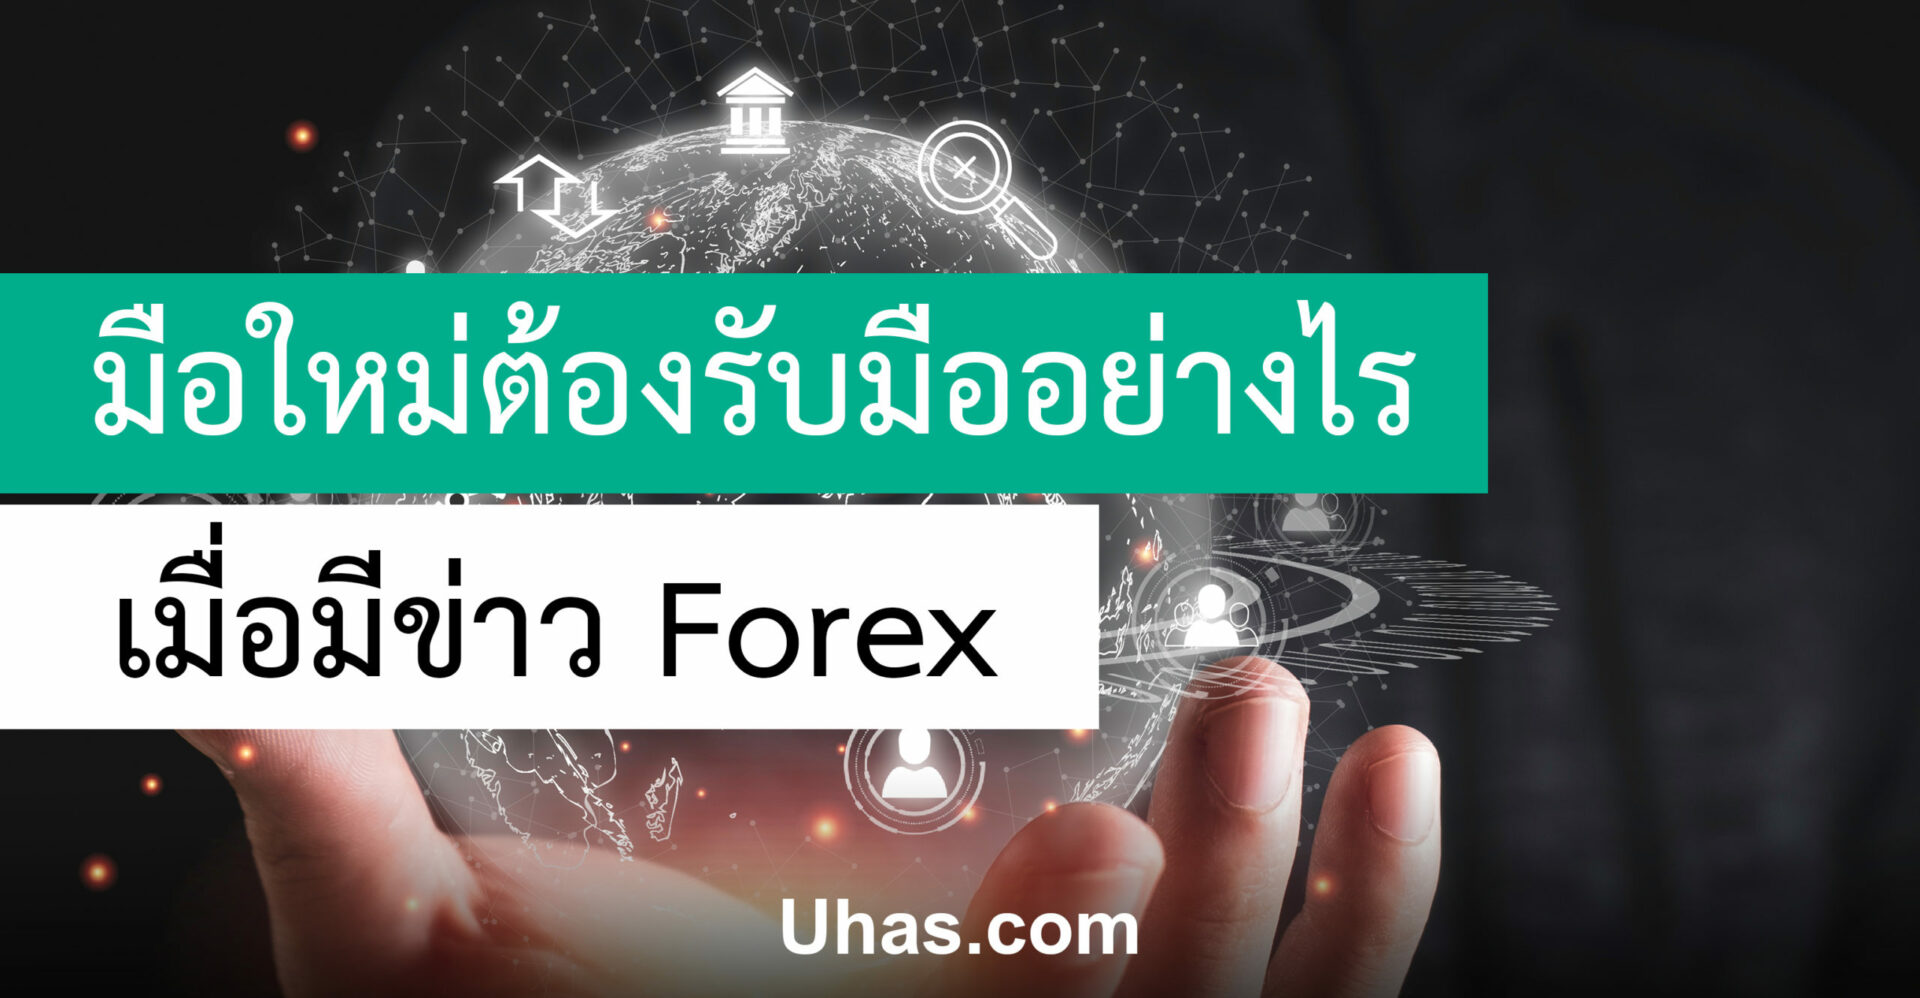 ข่าว Forex